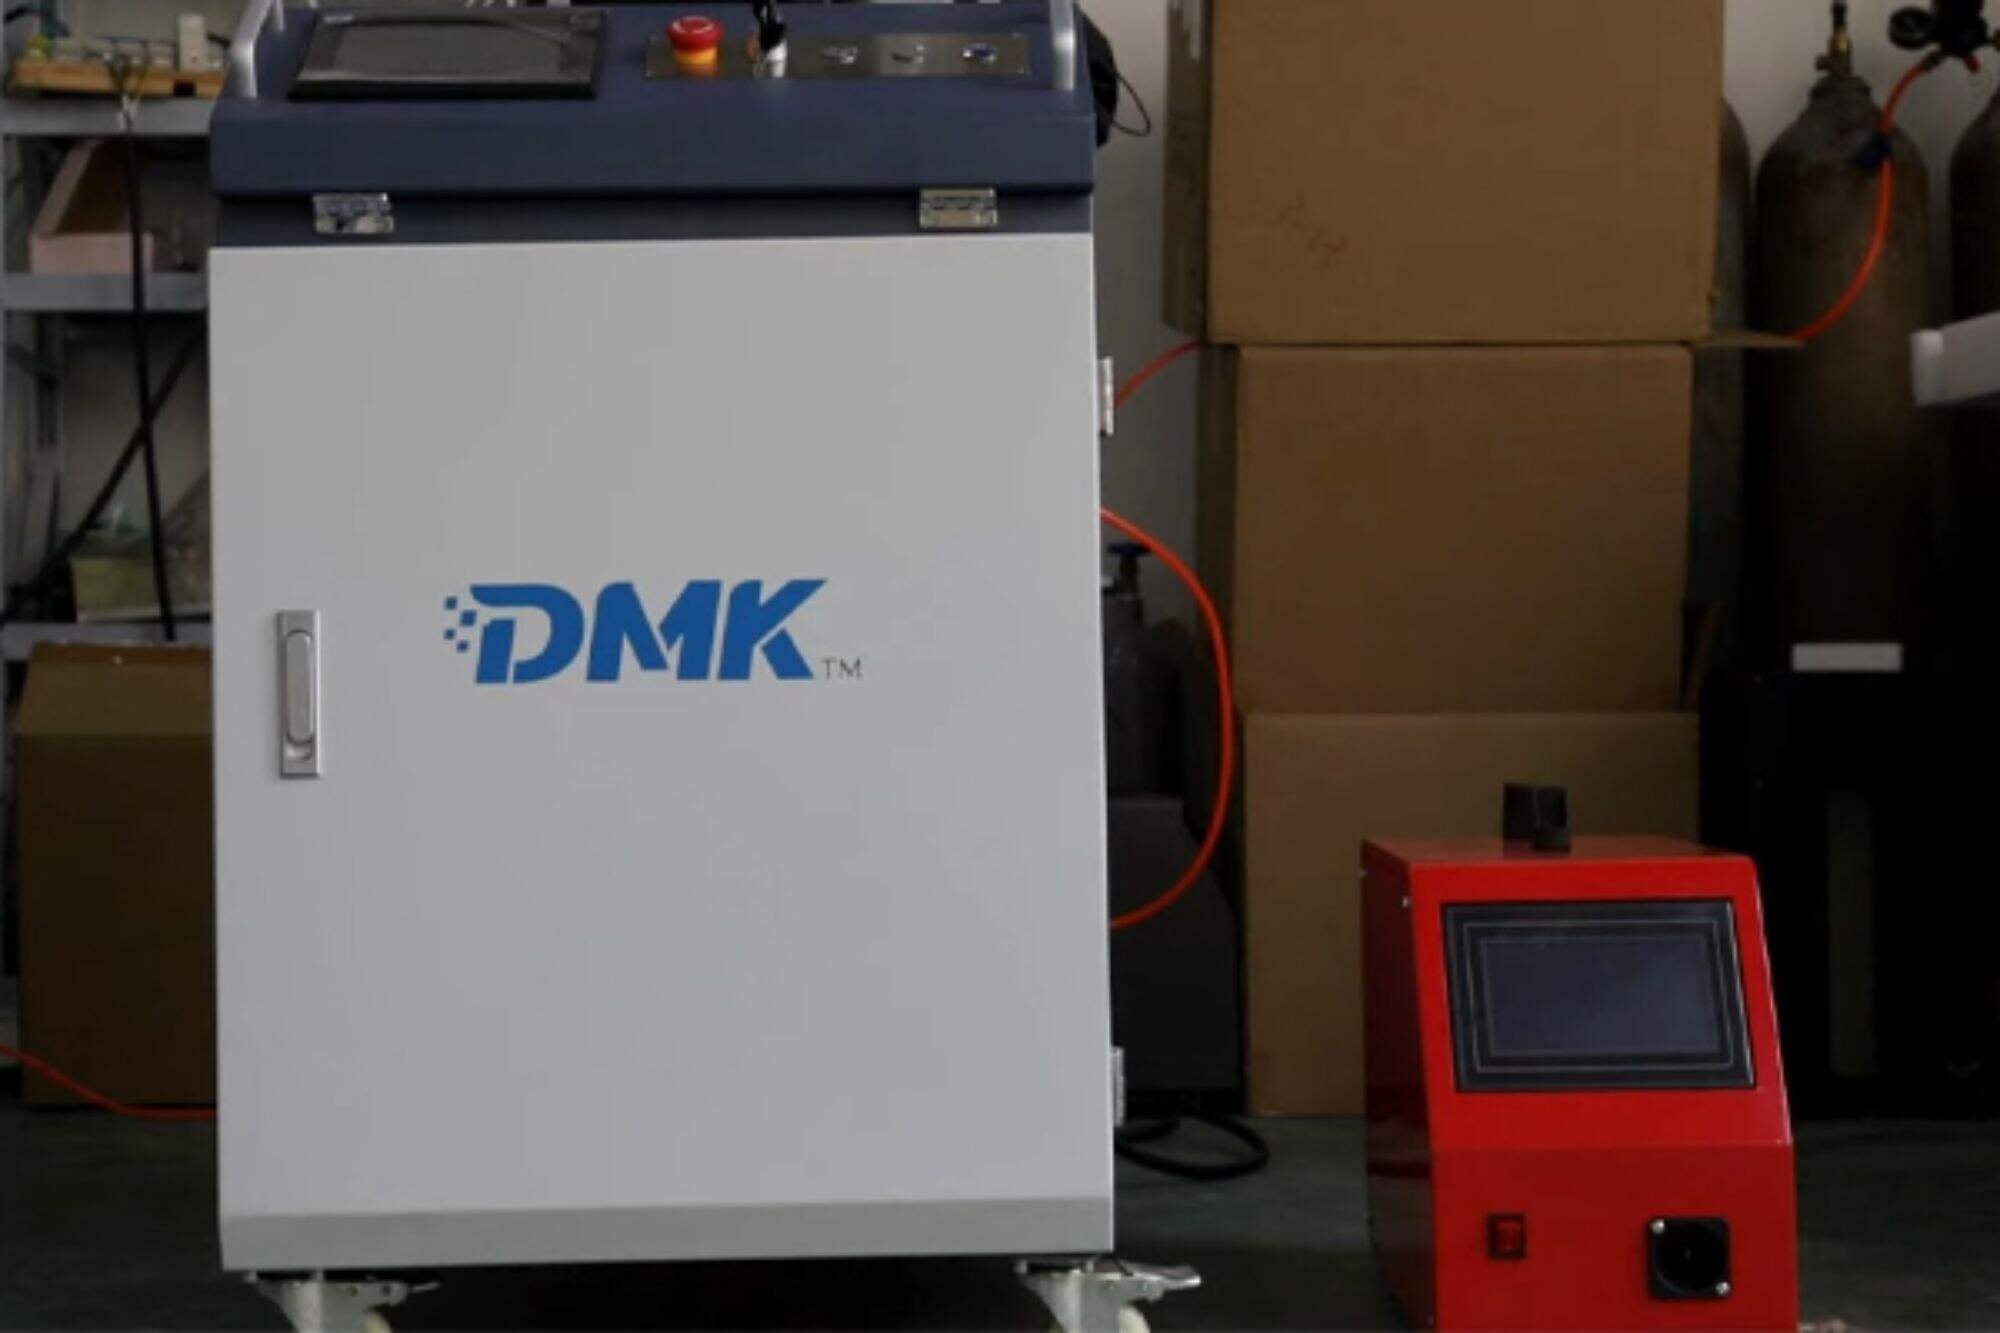 DMK1500W su soğutmalı el tipi lazer kaynak makinesi kurulum eğitimi